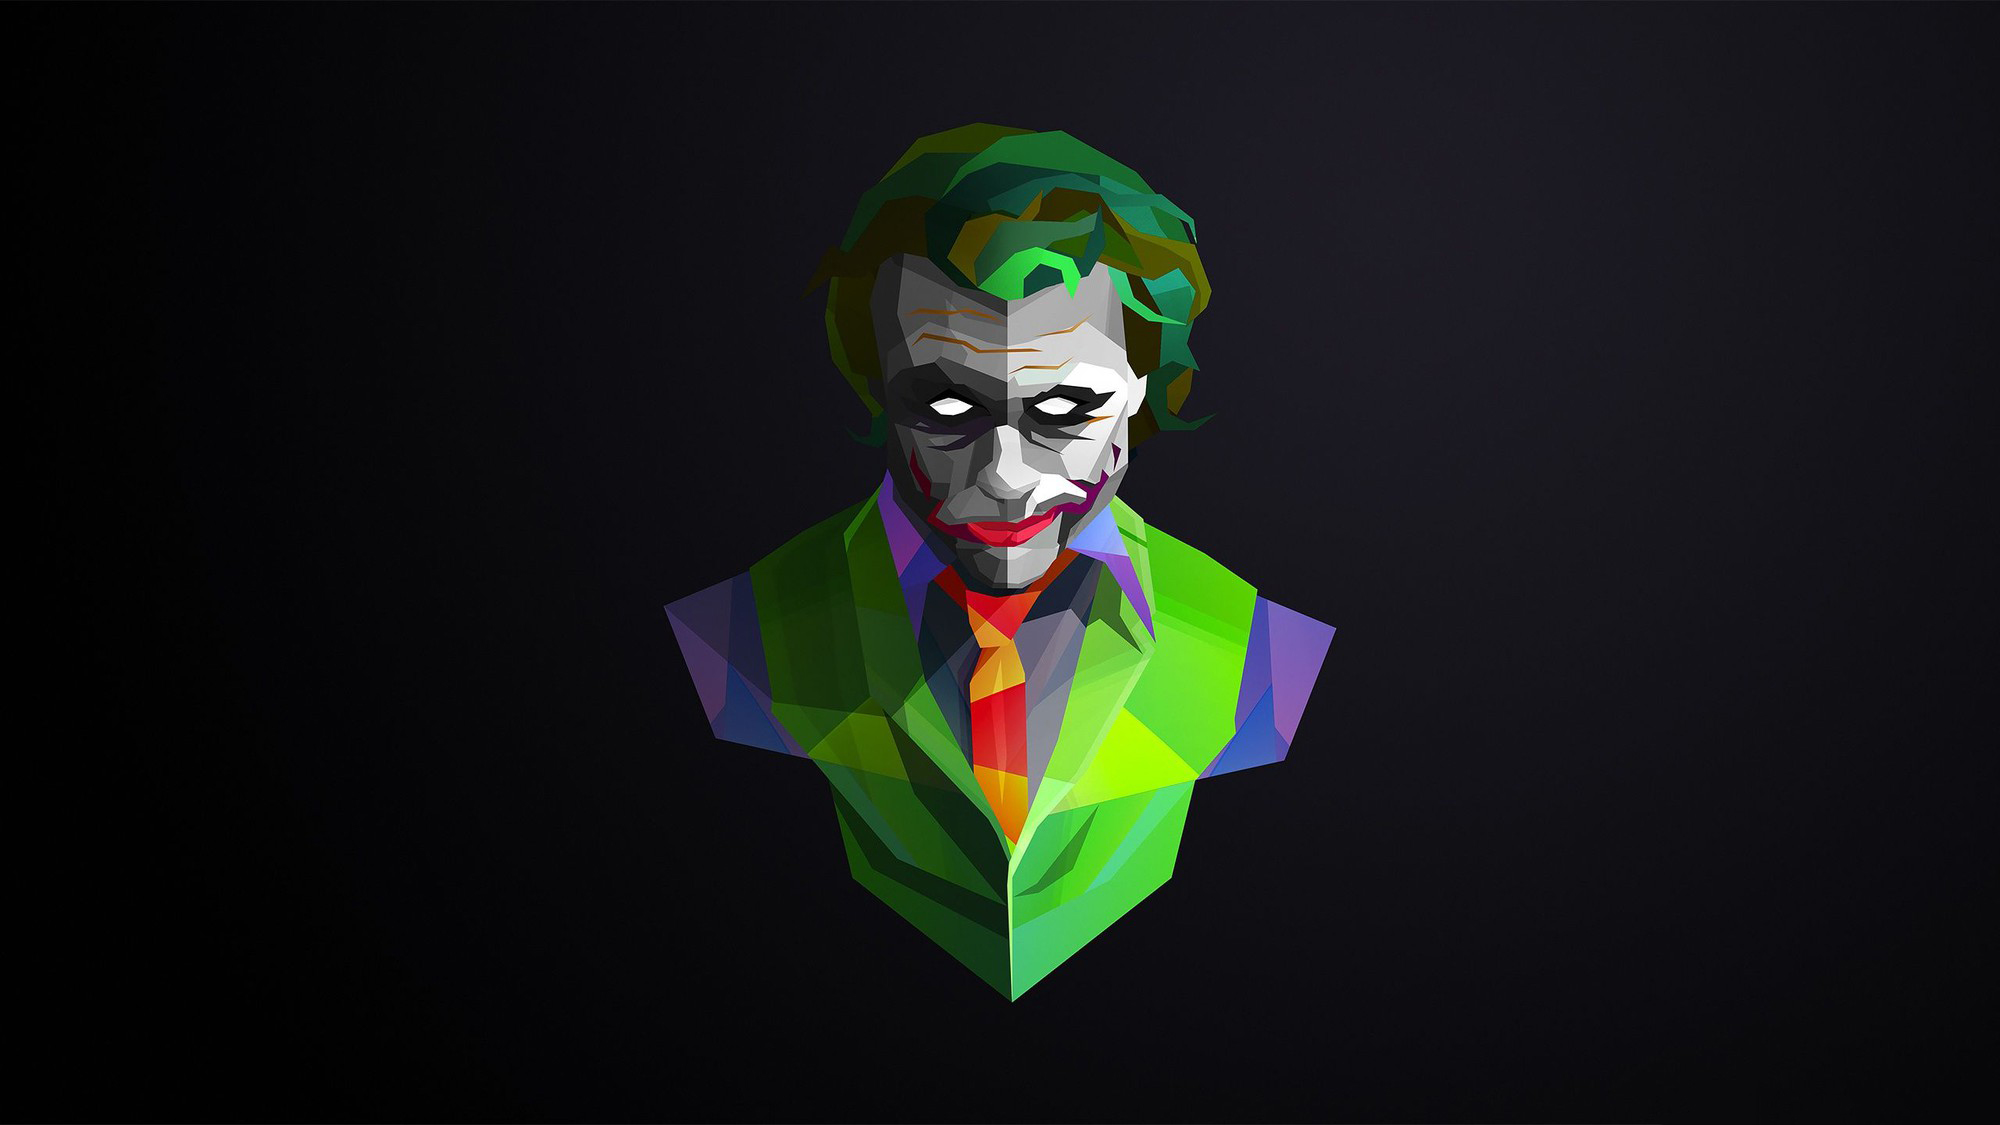 Hình nền máy tính Joker đẹp và đơn giản